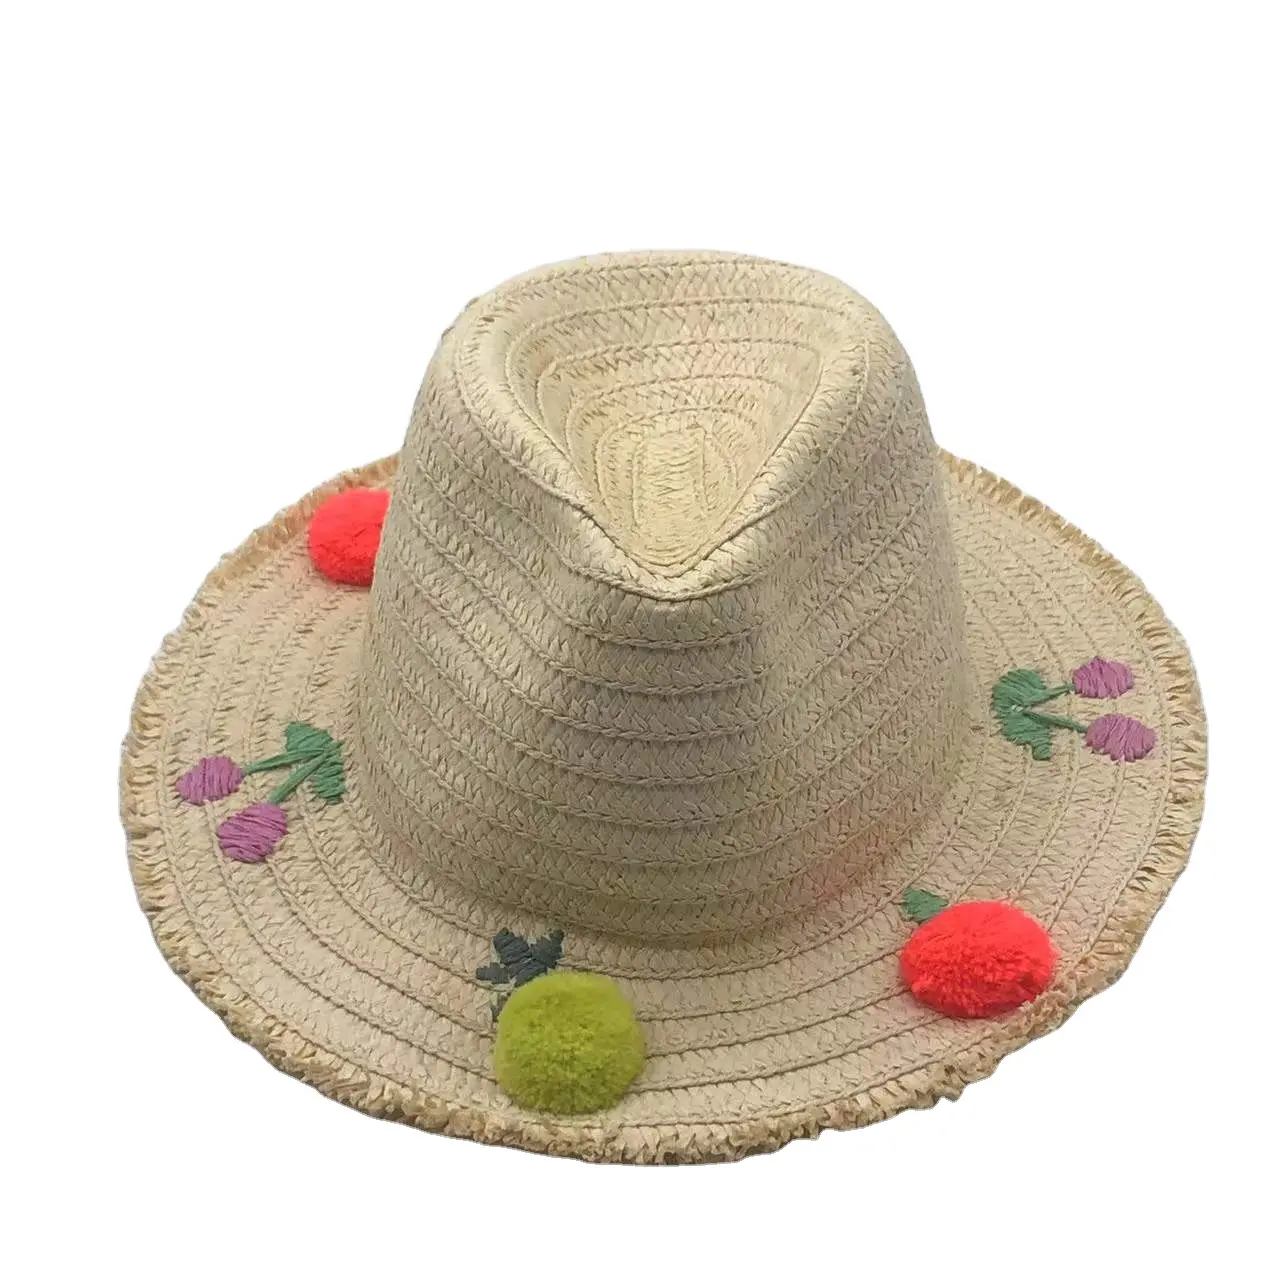 Versatile adorabile cappello di paglia ciliegia piccolo cappello di lana fresca bordo parasole cappello giapponese